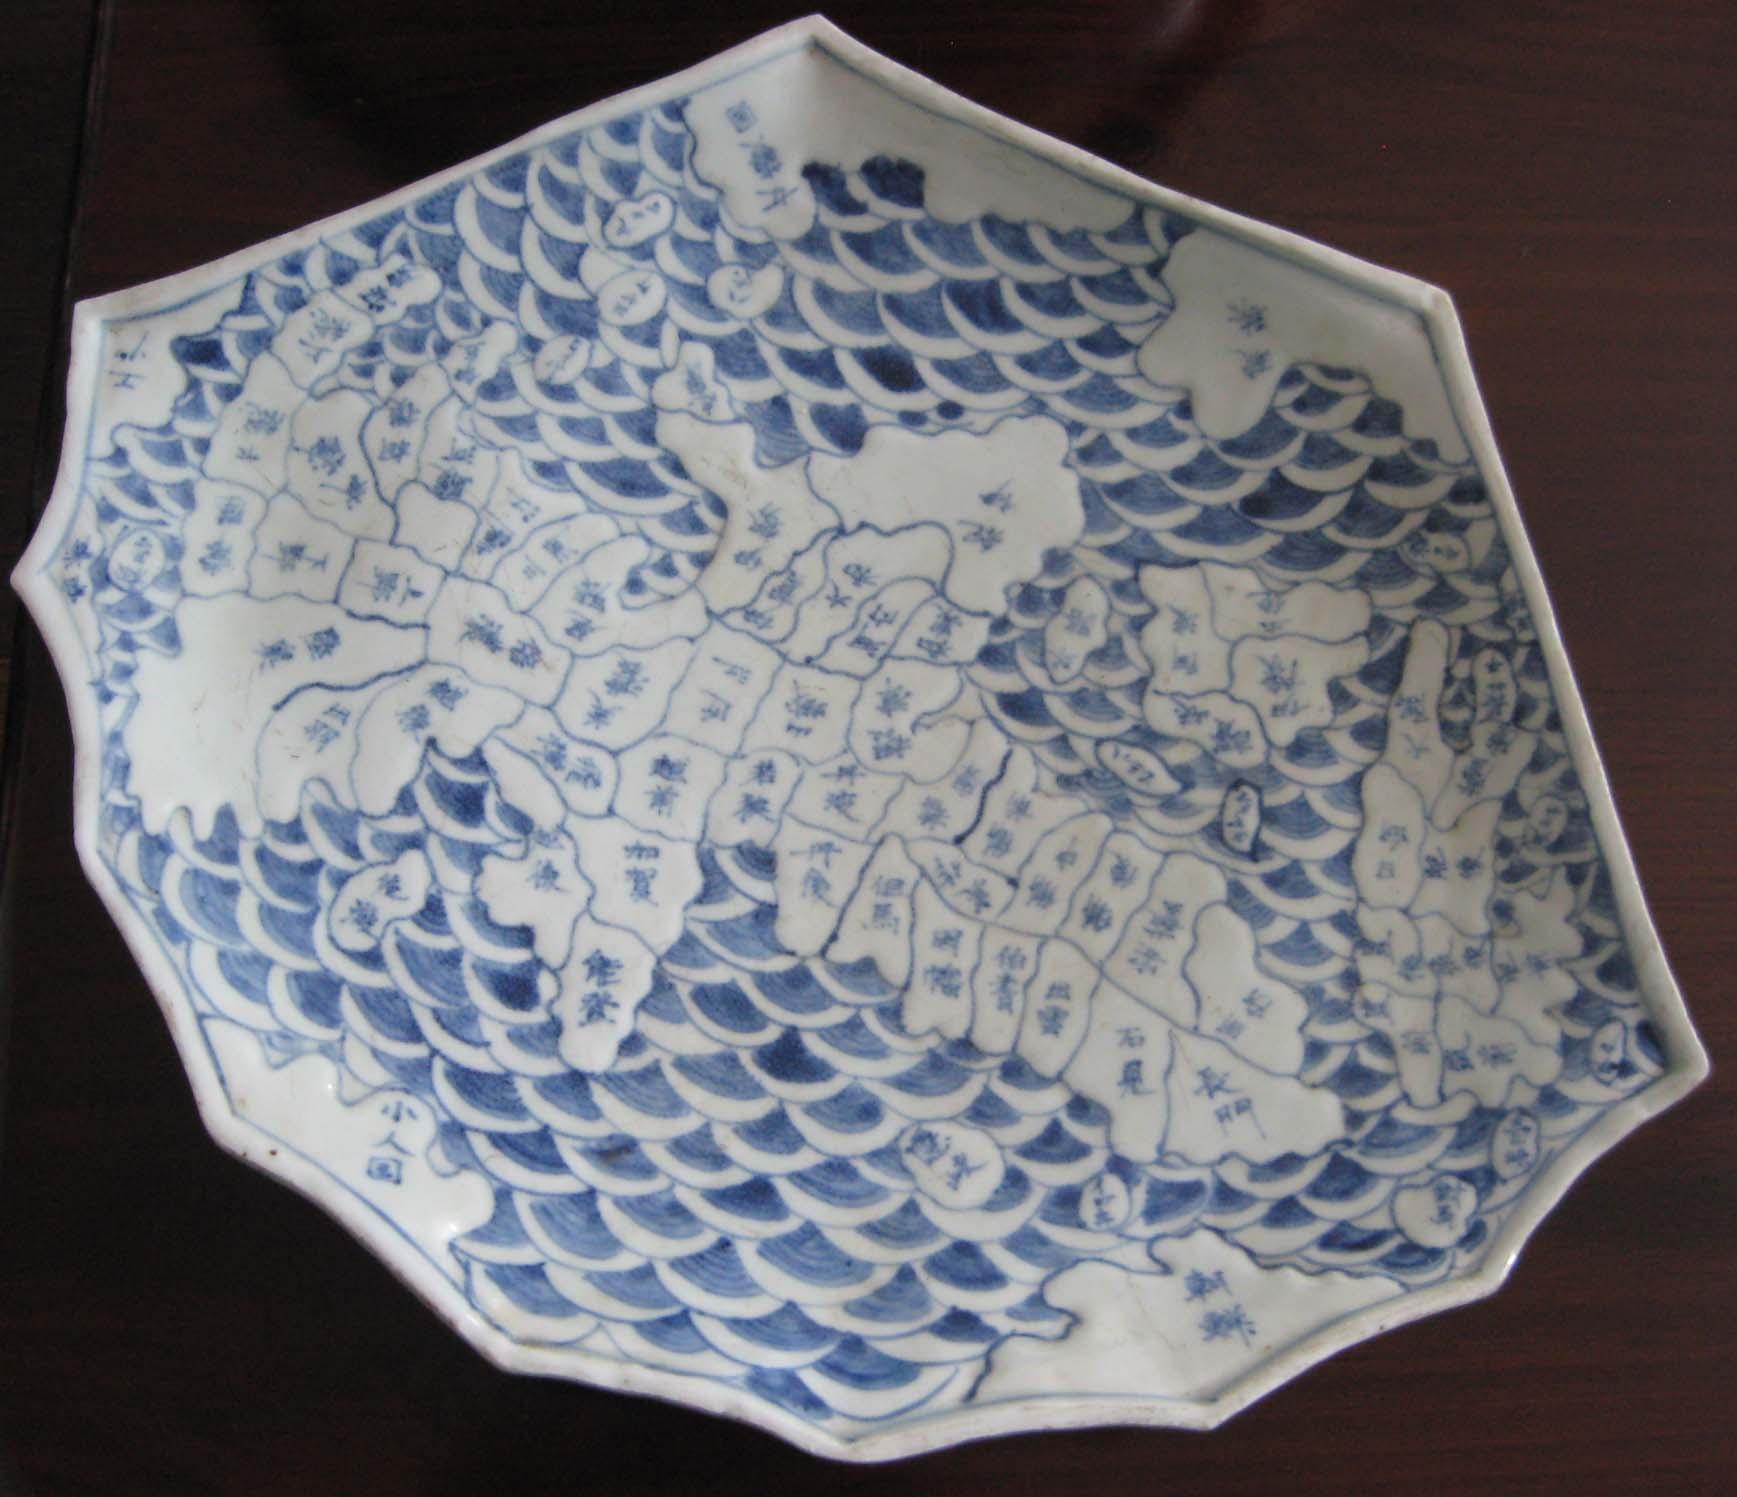 Edo Japanese Arita Blue and White Ceramic Map Dish, circa 1840